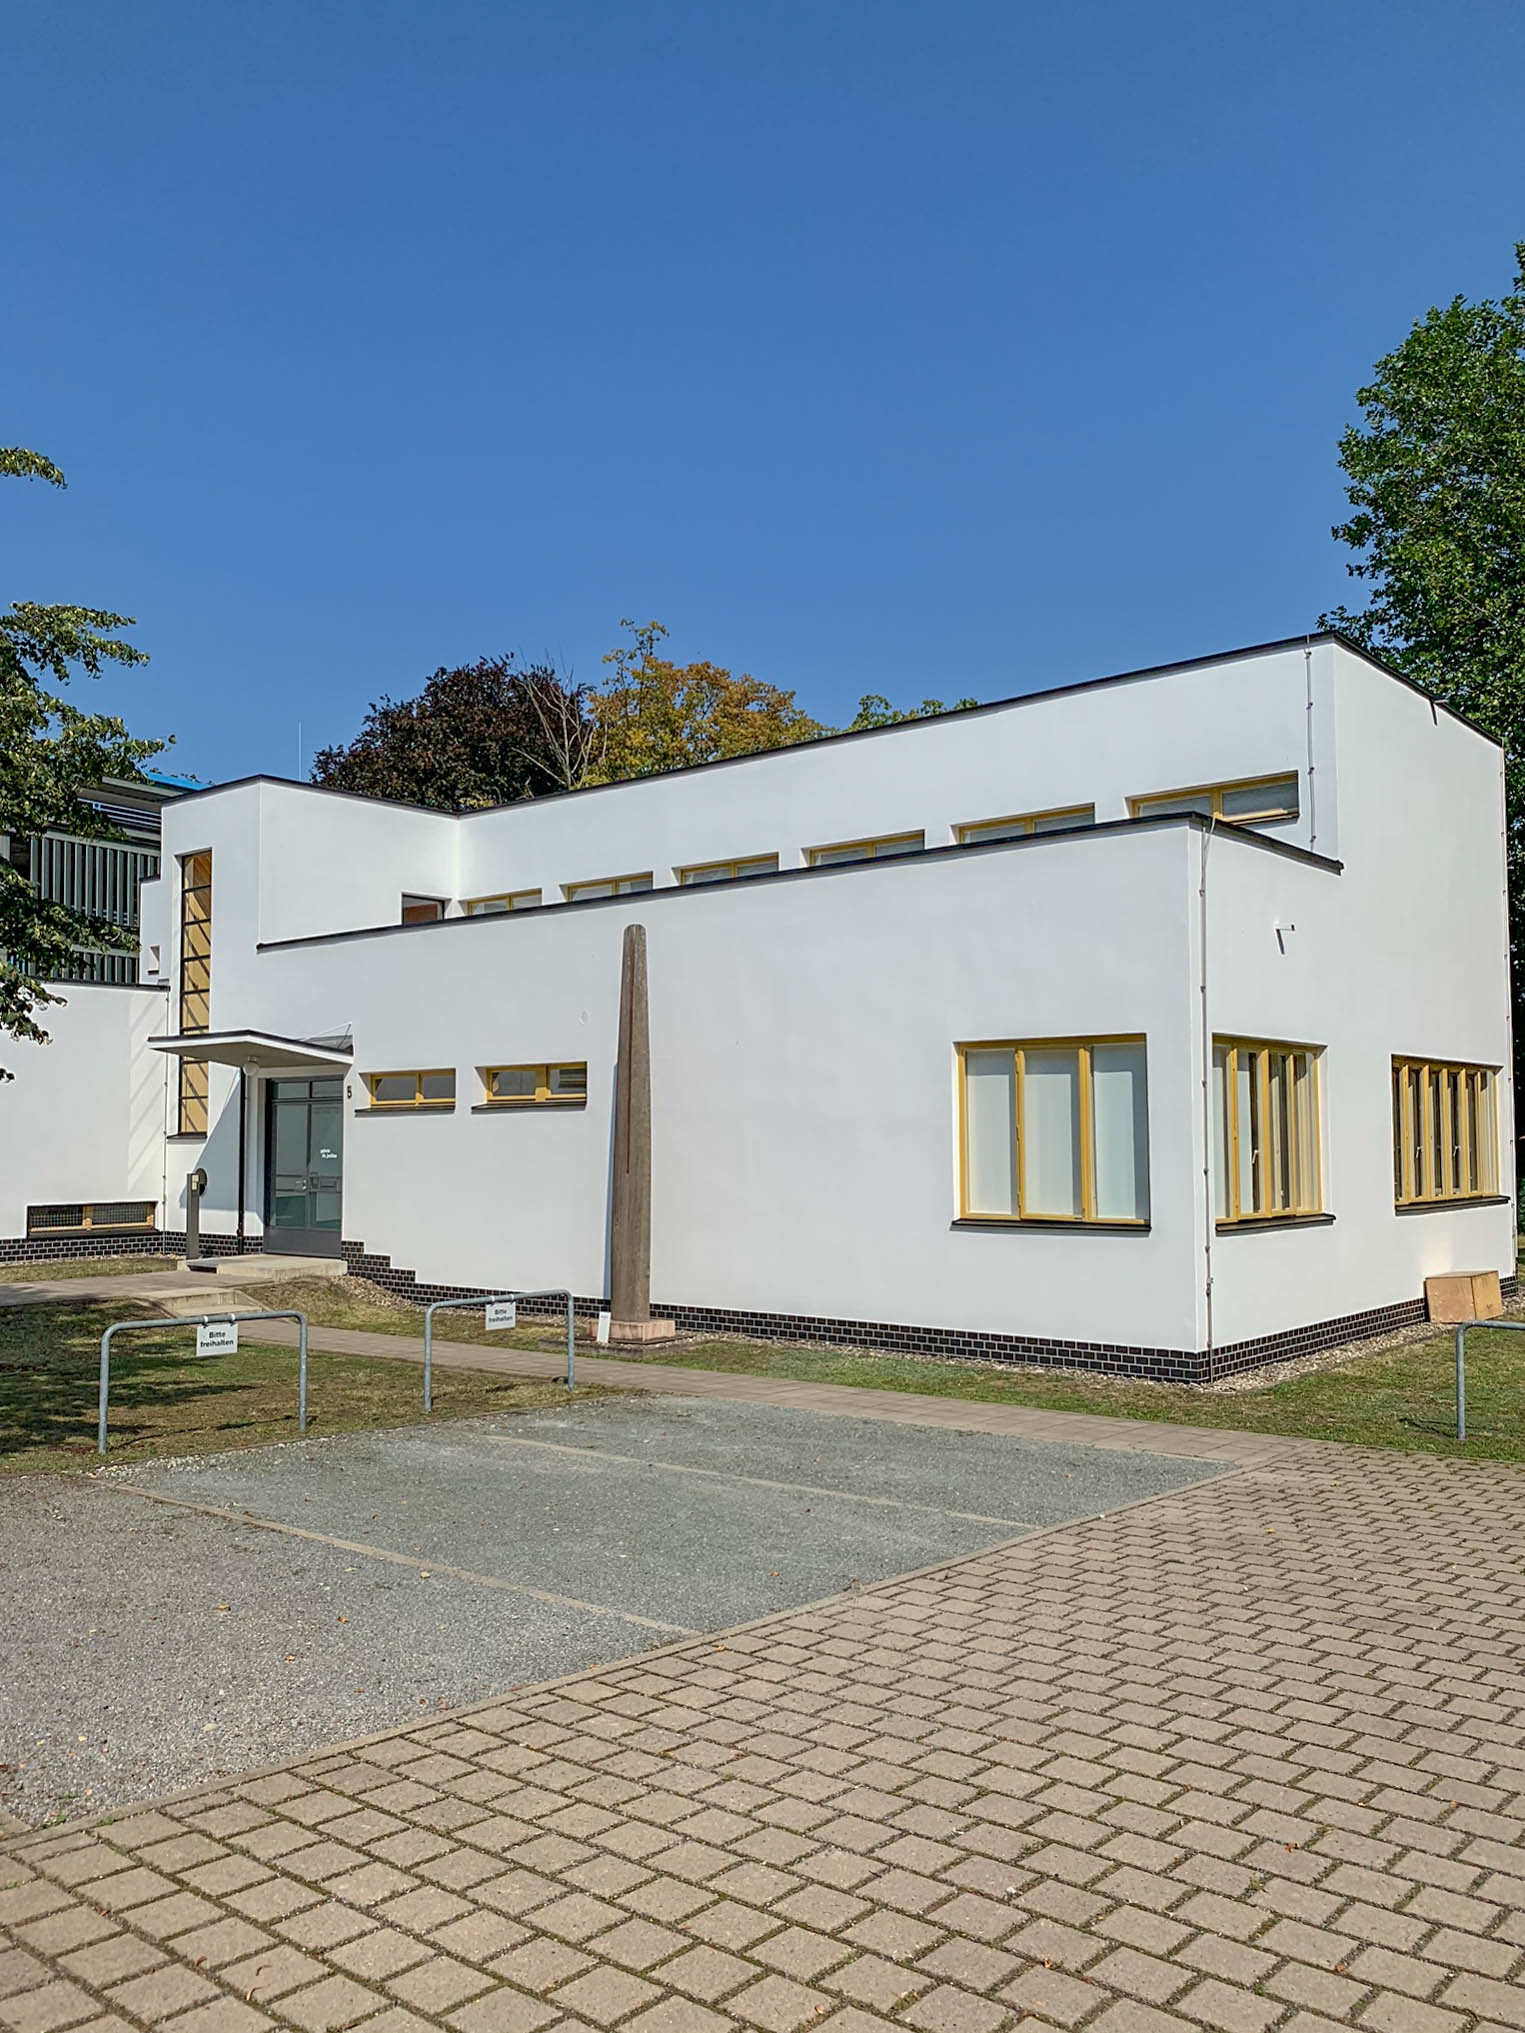 Direktorenwohnhaus, 1930-1931. Architekt: Otto Haesler